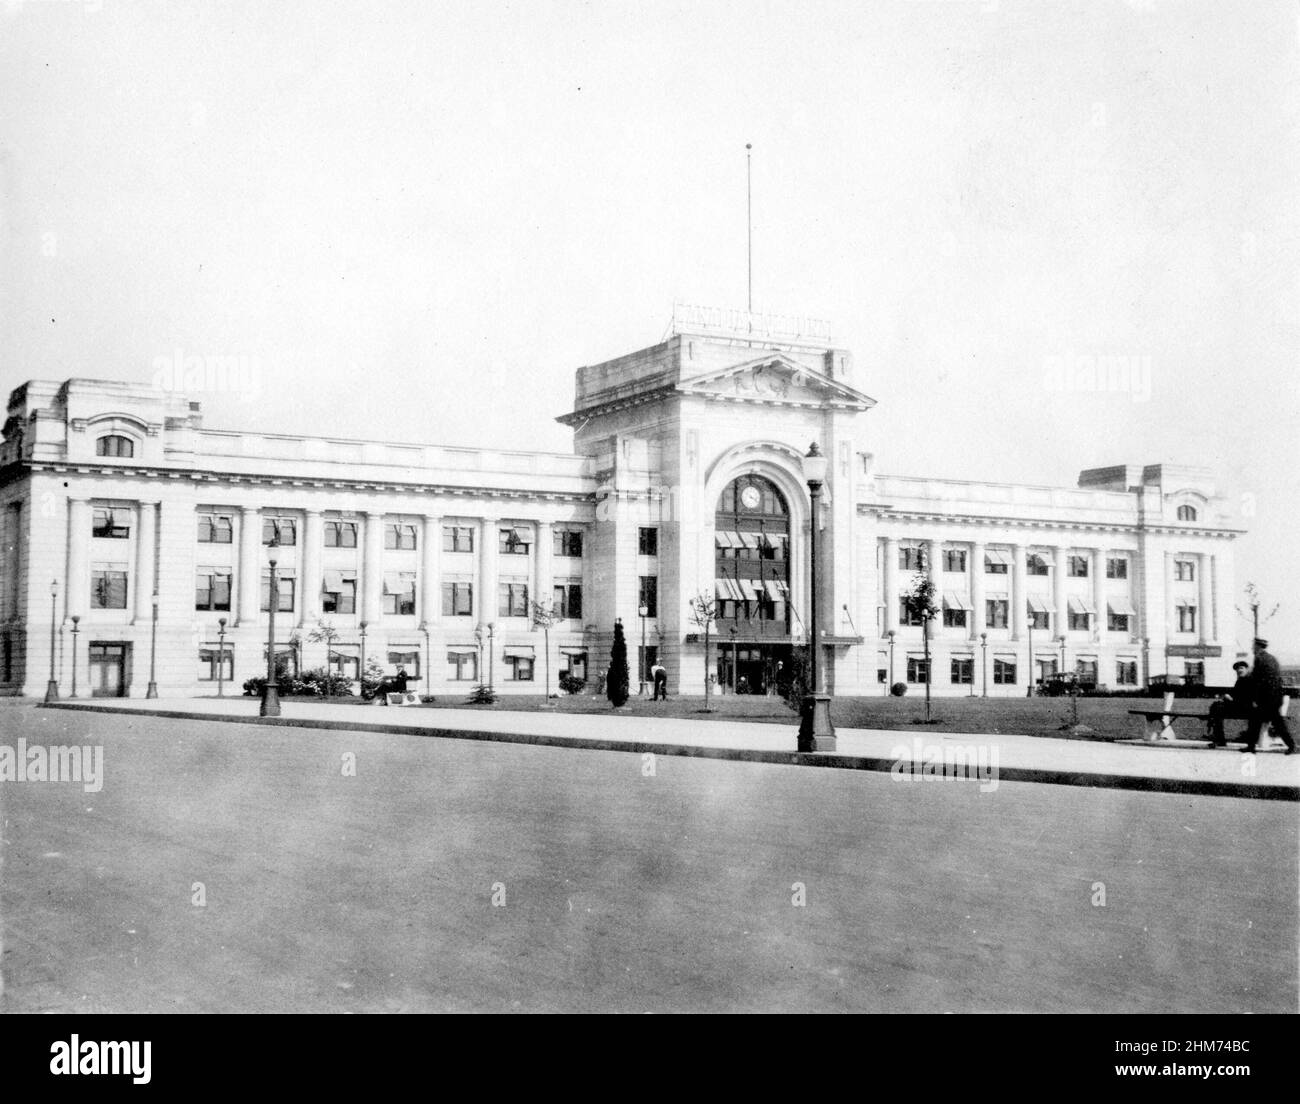 Photographie d'époque en noir et blanc de la gare ferroviaire canadienne du Nord du CN en 1917, Vancouver (Colombie-Britannique), Canada Banque D'Images